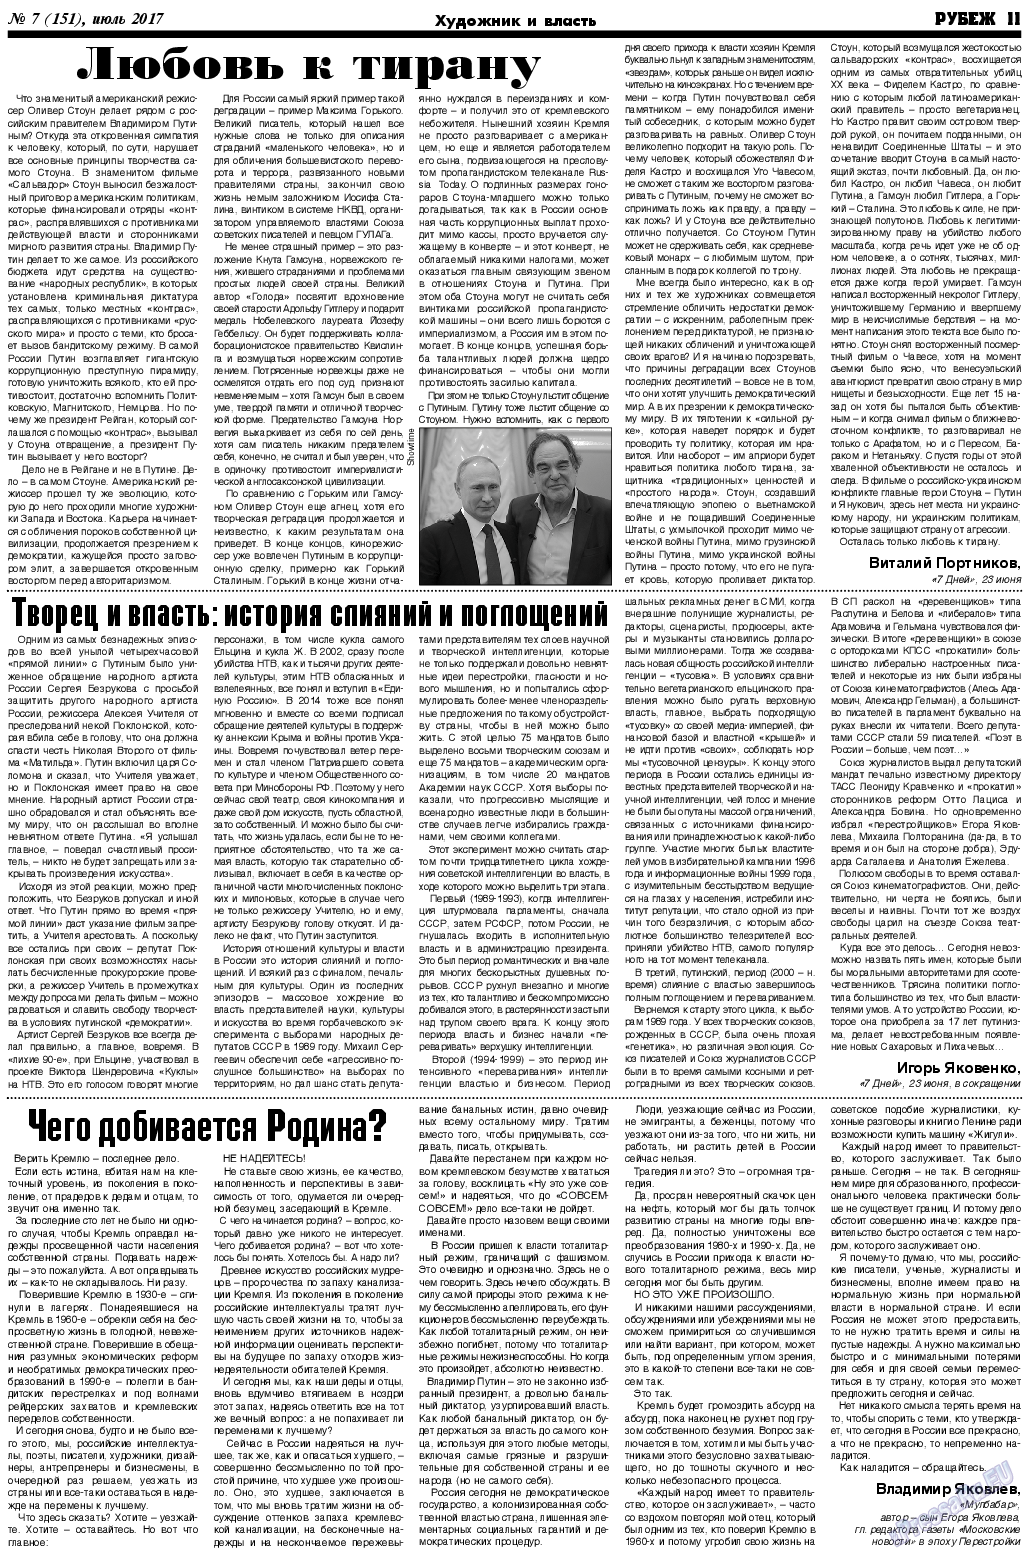 Рубеж (газета). 2017 год, номер 7, стр. 11